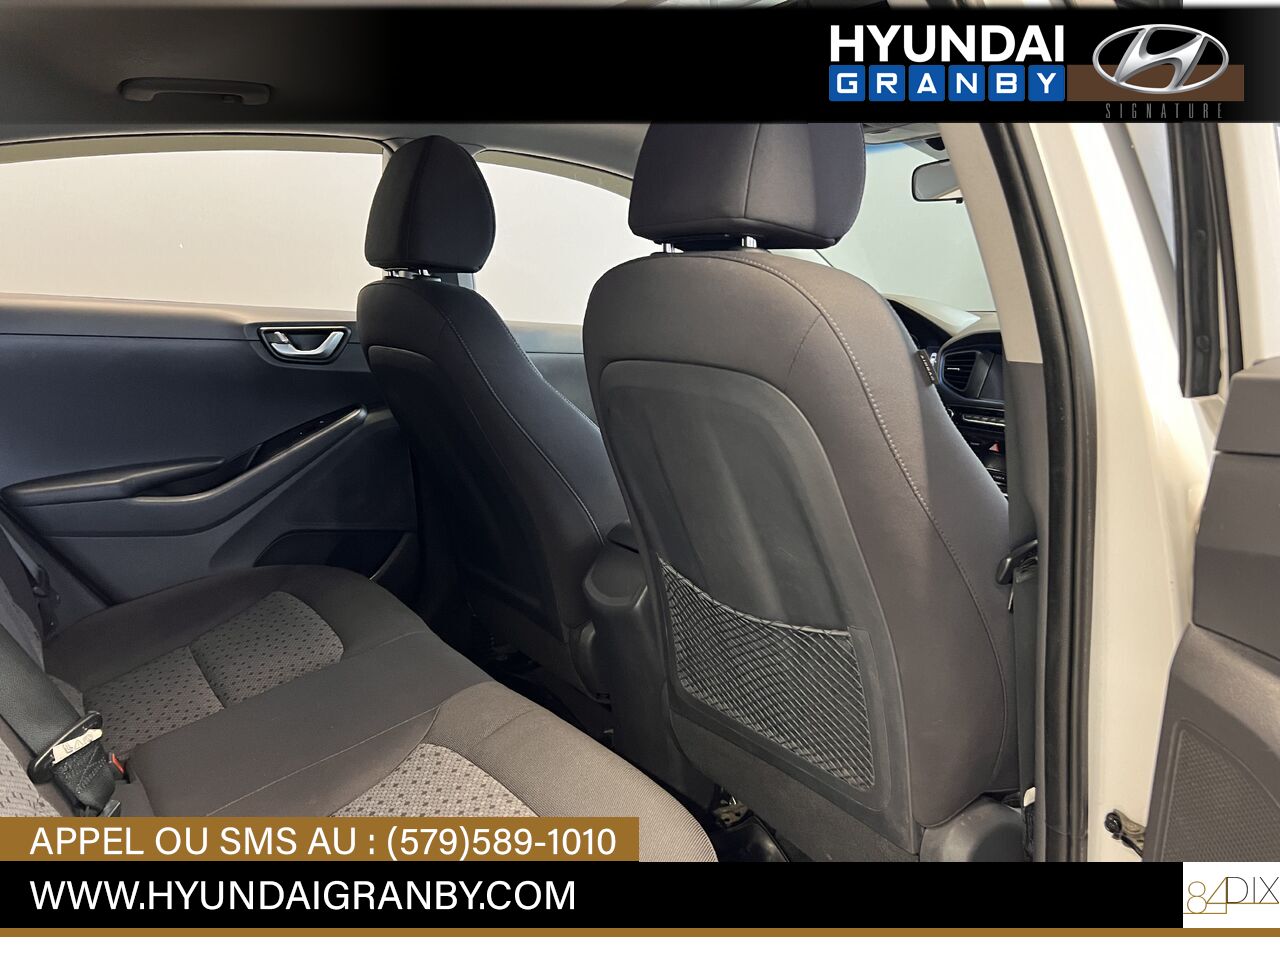 2017 Hyundai Ioniq hybride Granby - photo #29